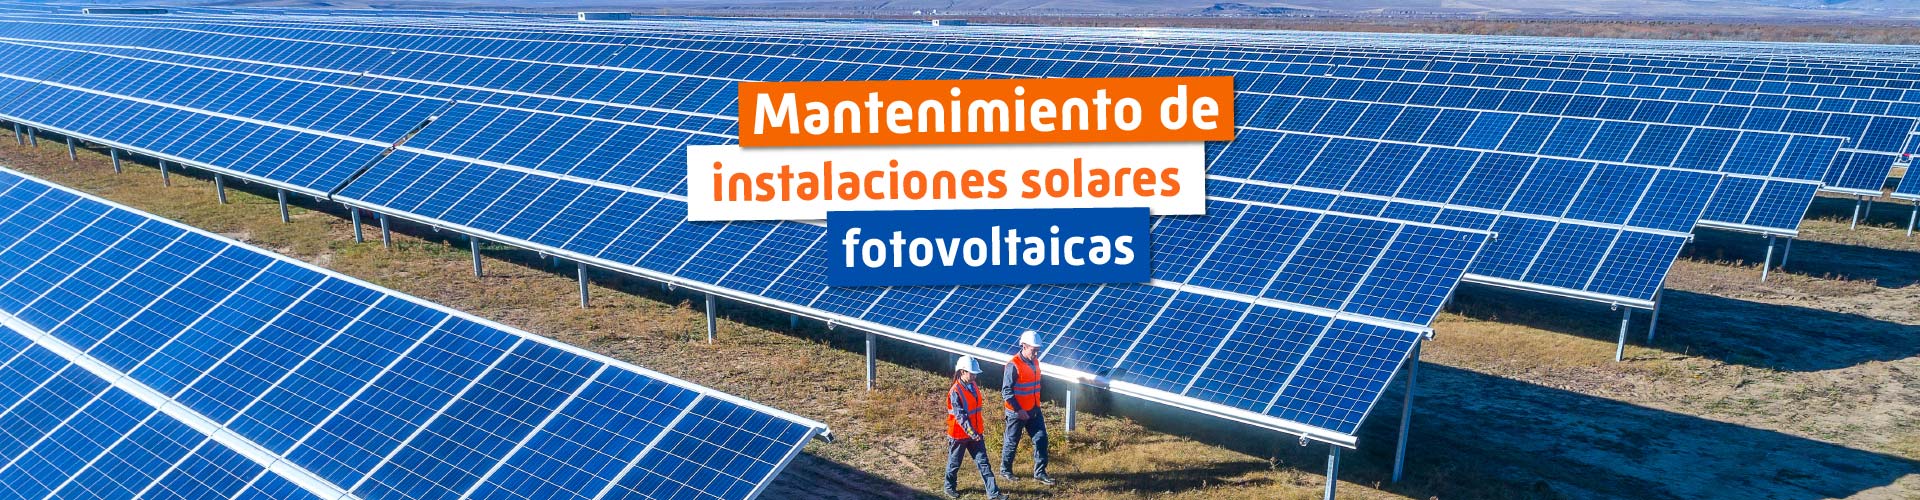 Mantenimiento de instalaciones solares fotovoltaicas